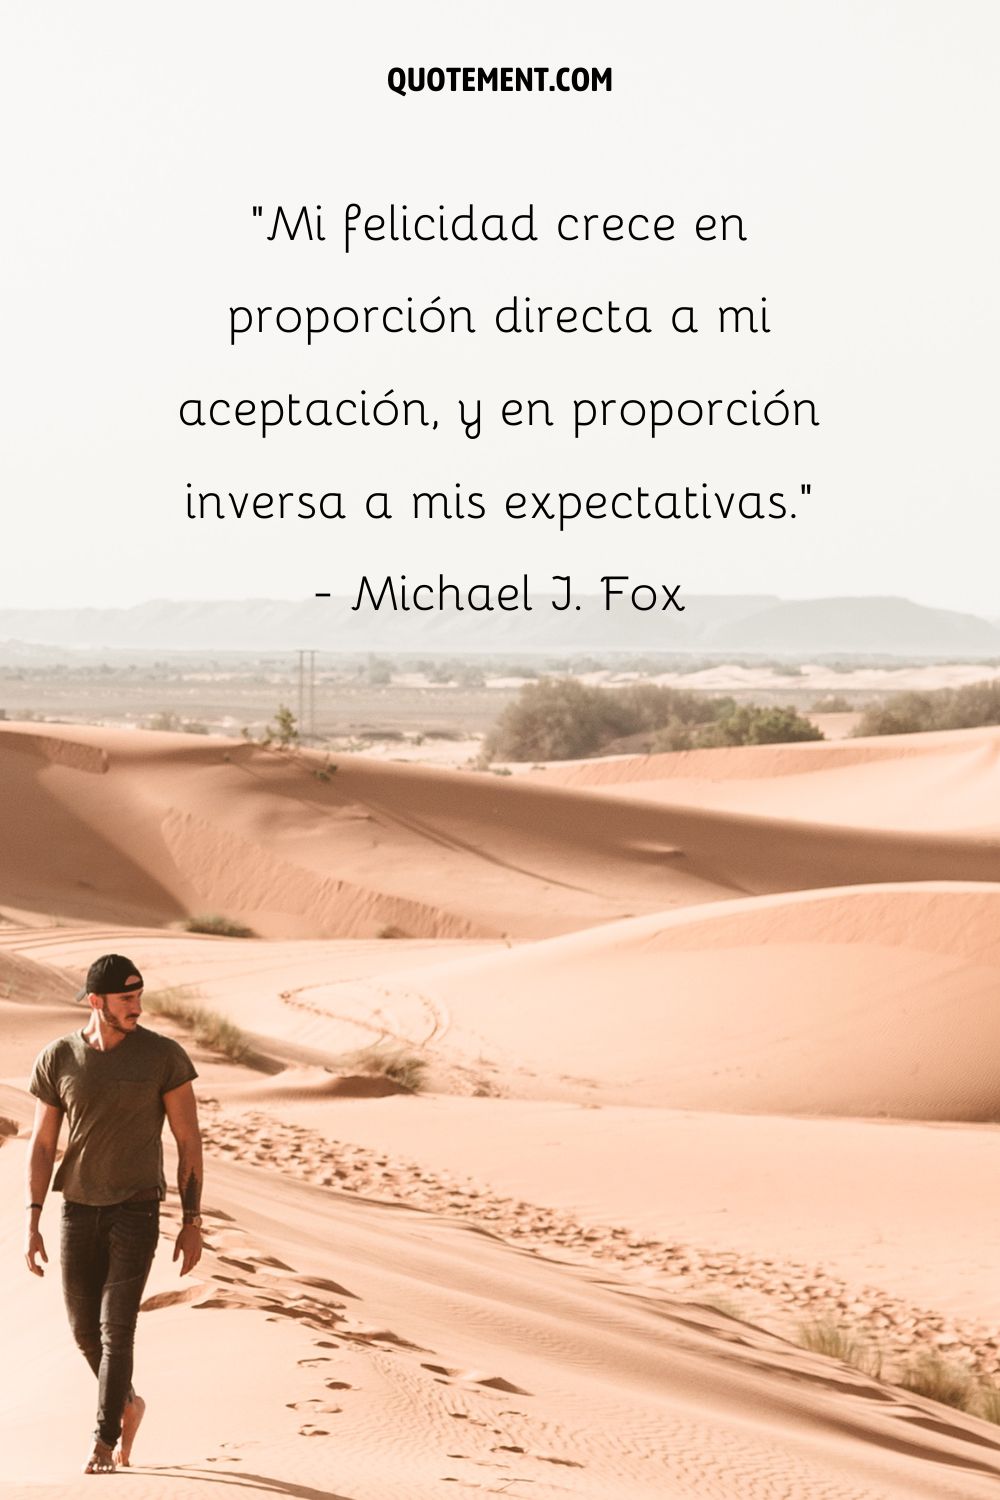 "Mi felicidad crece en proporción directa a mi aceptación, y en proporción inversa a mis expectativas". - Michael J. Fox